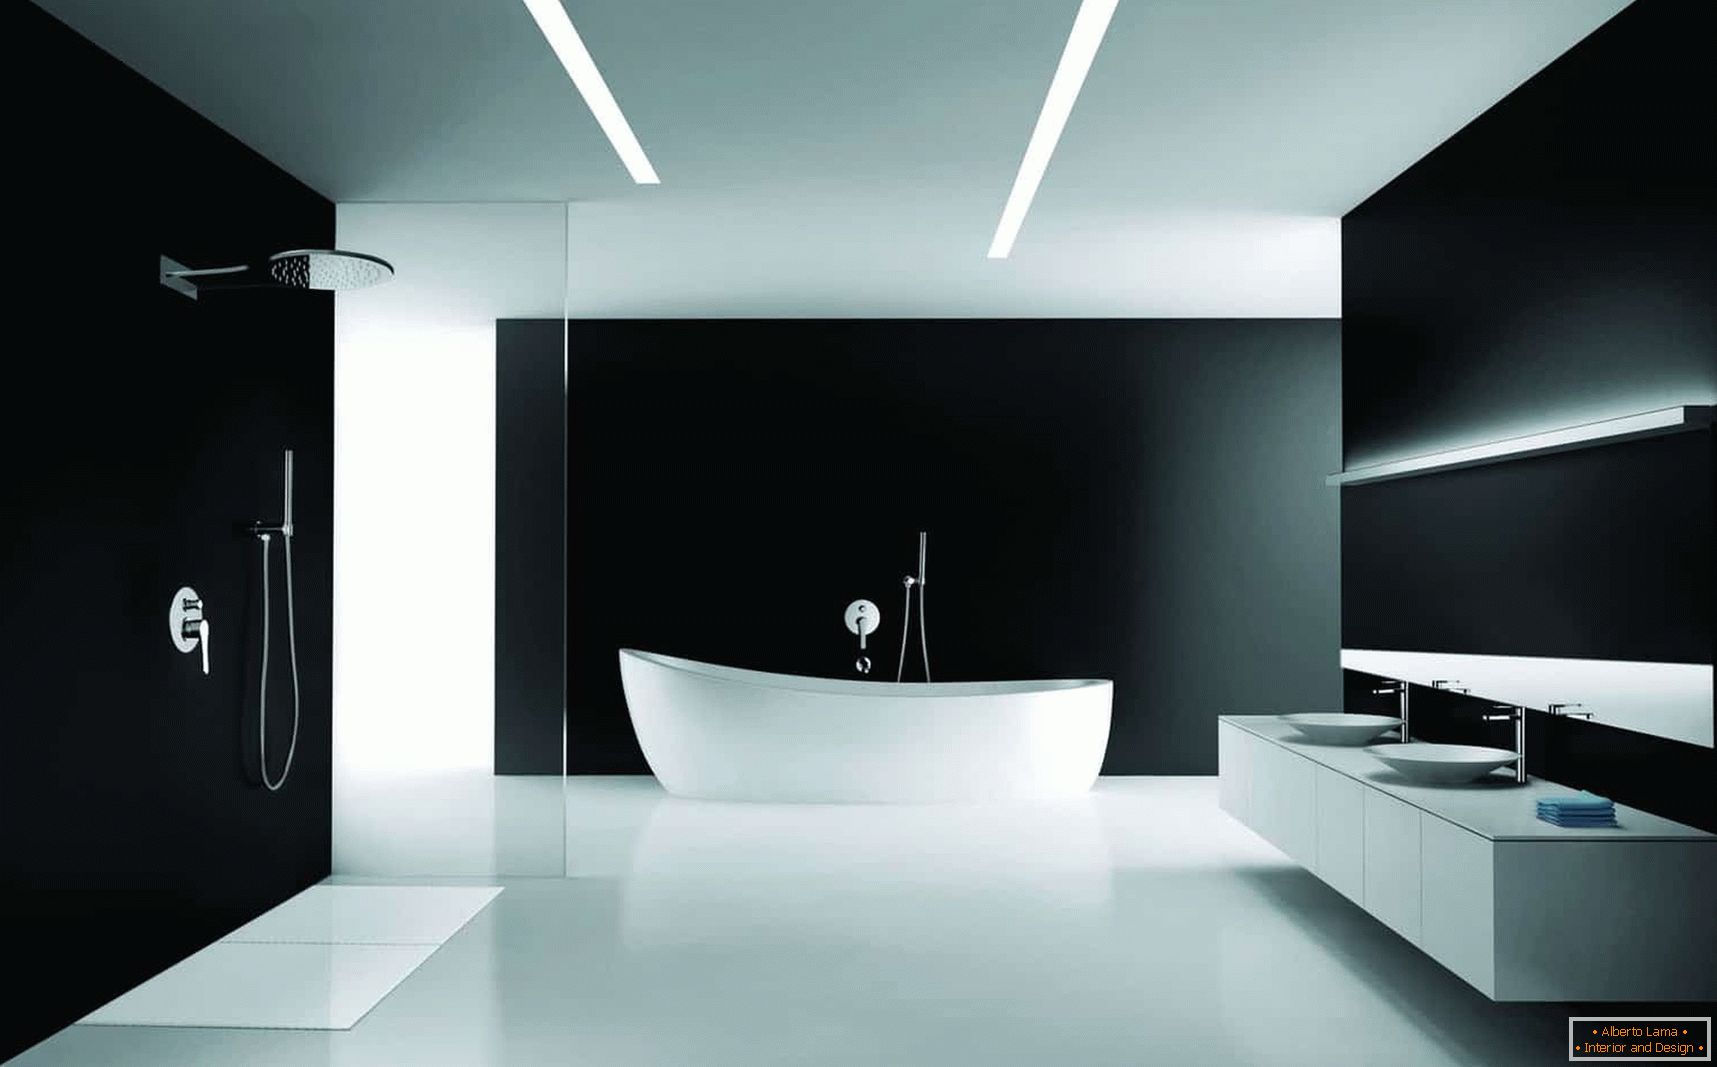 Opção de design do banheiro в минимализме